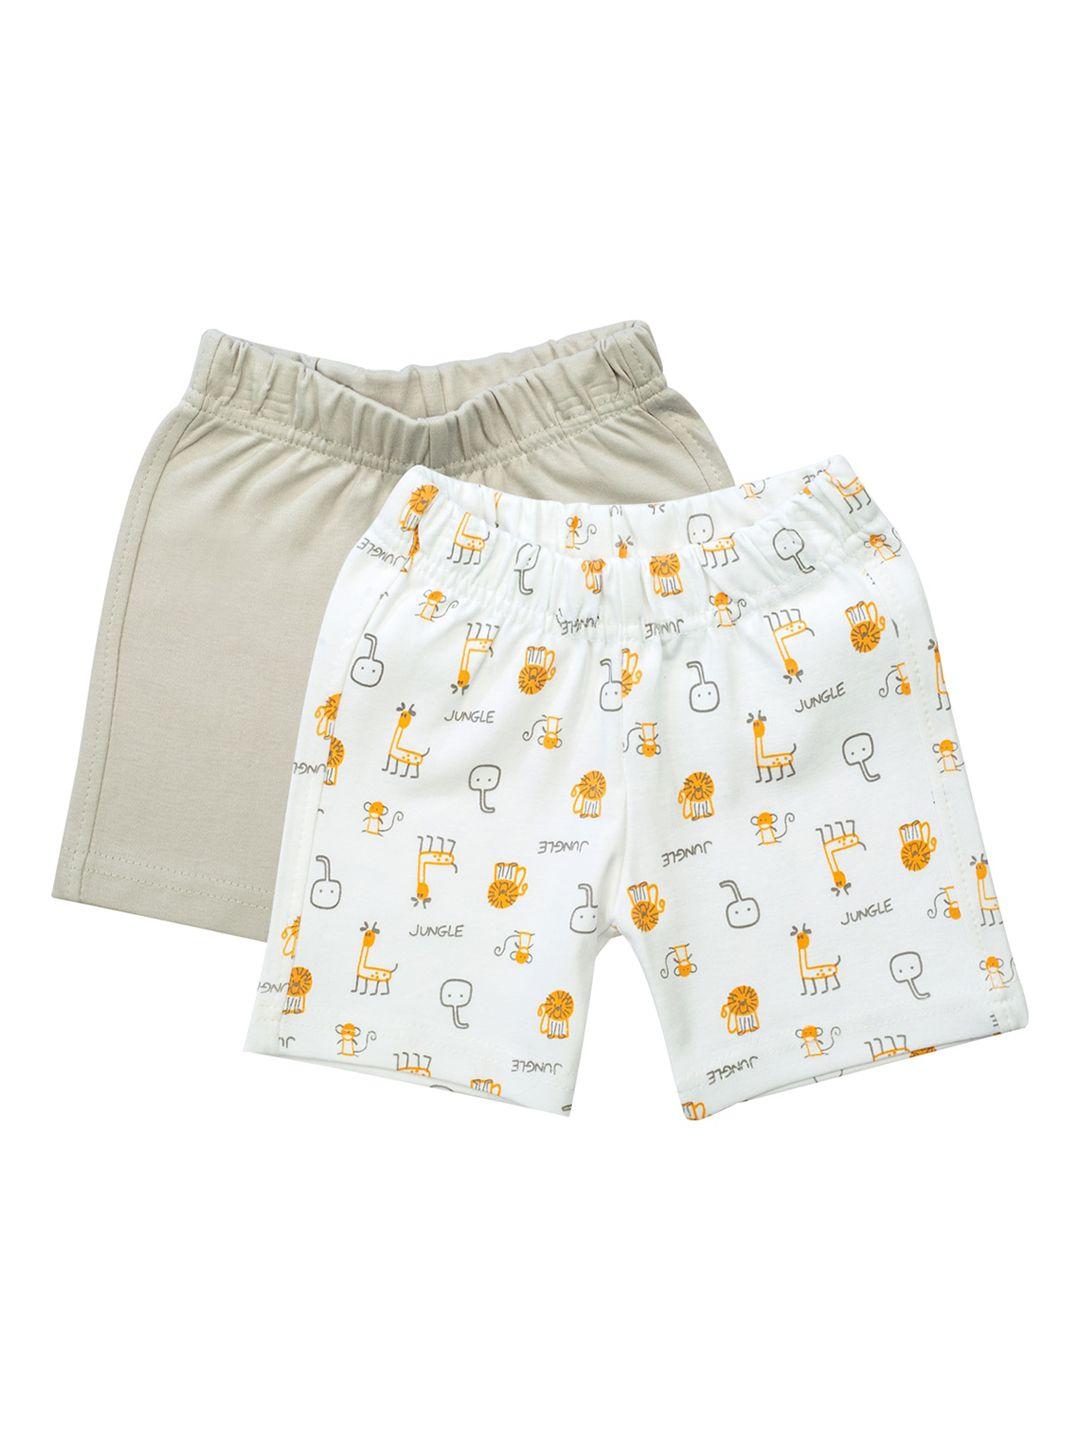 meemee unisex kids pack of 2 printed regular shorts